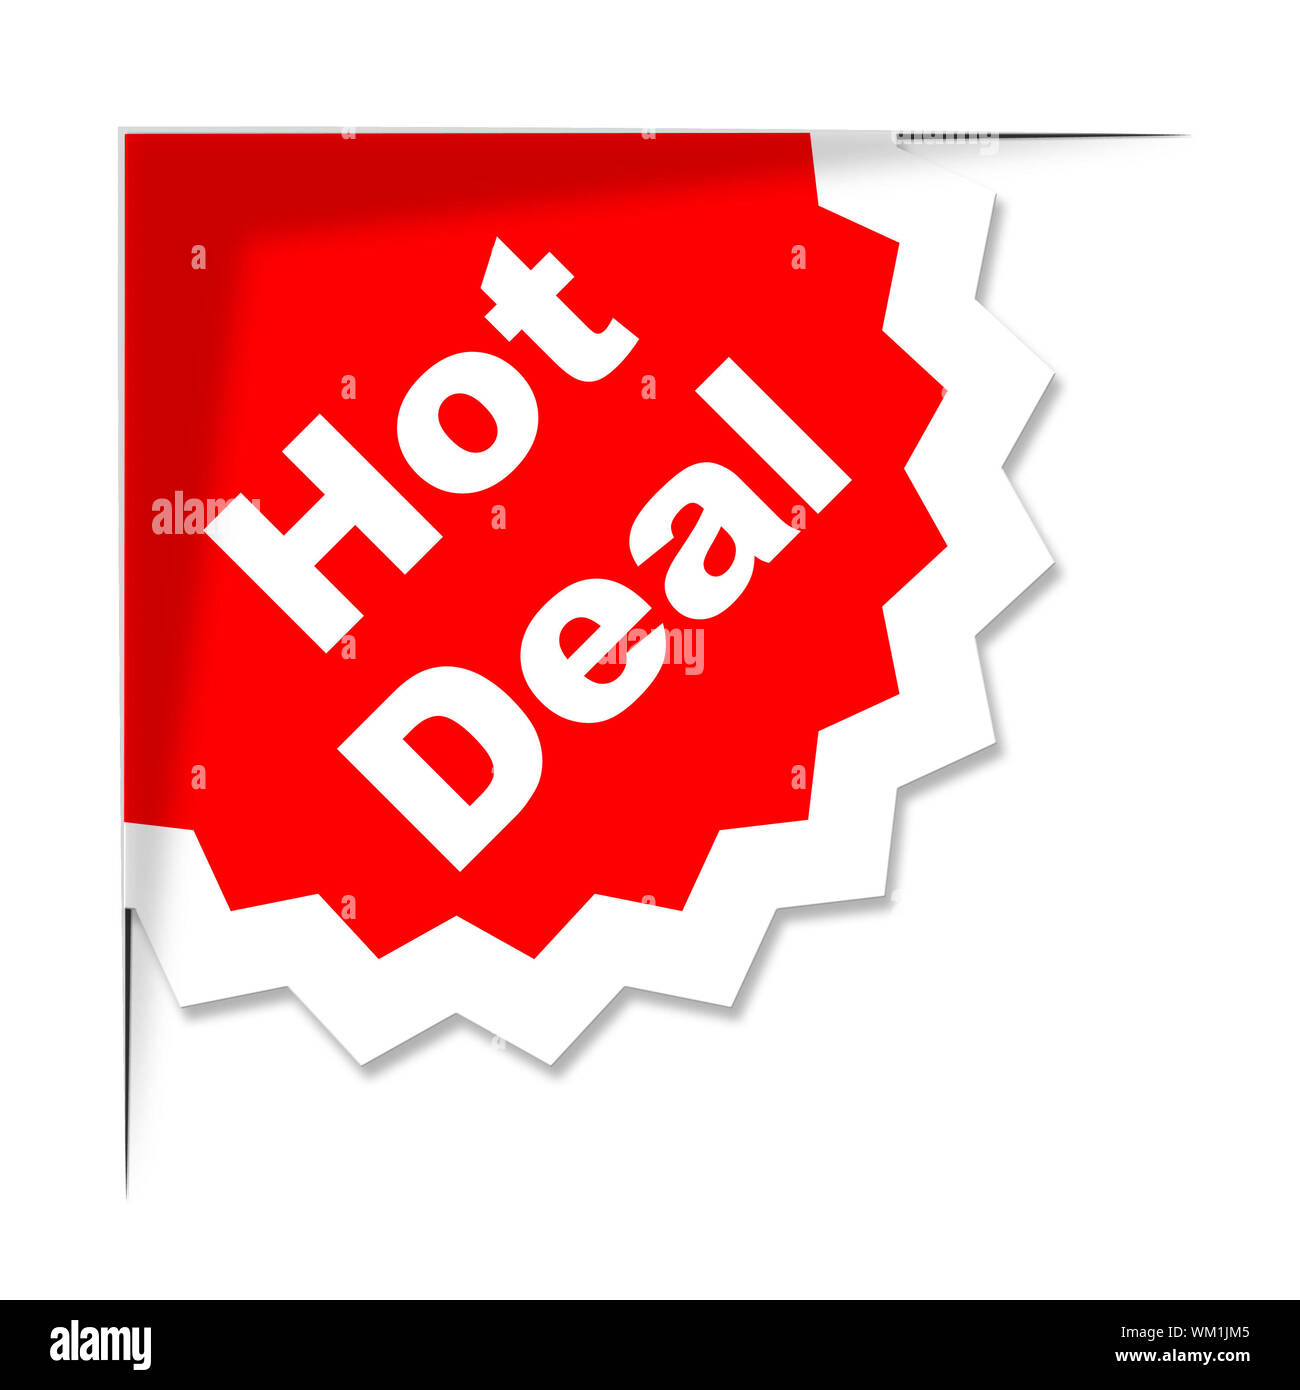 https://c8.alamy.com/comp/WM1JM5/hot-deal-meaning-discount-deals-and-cheap-WM1JM5.jpg